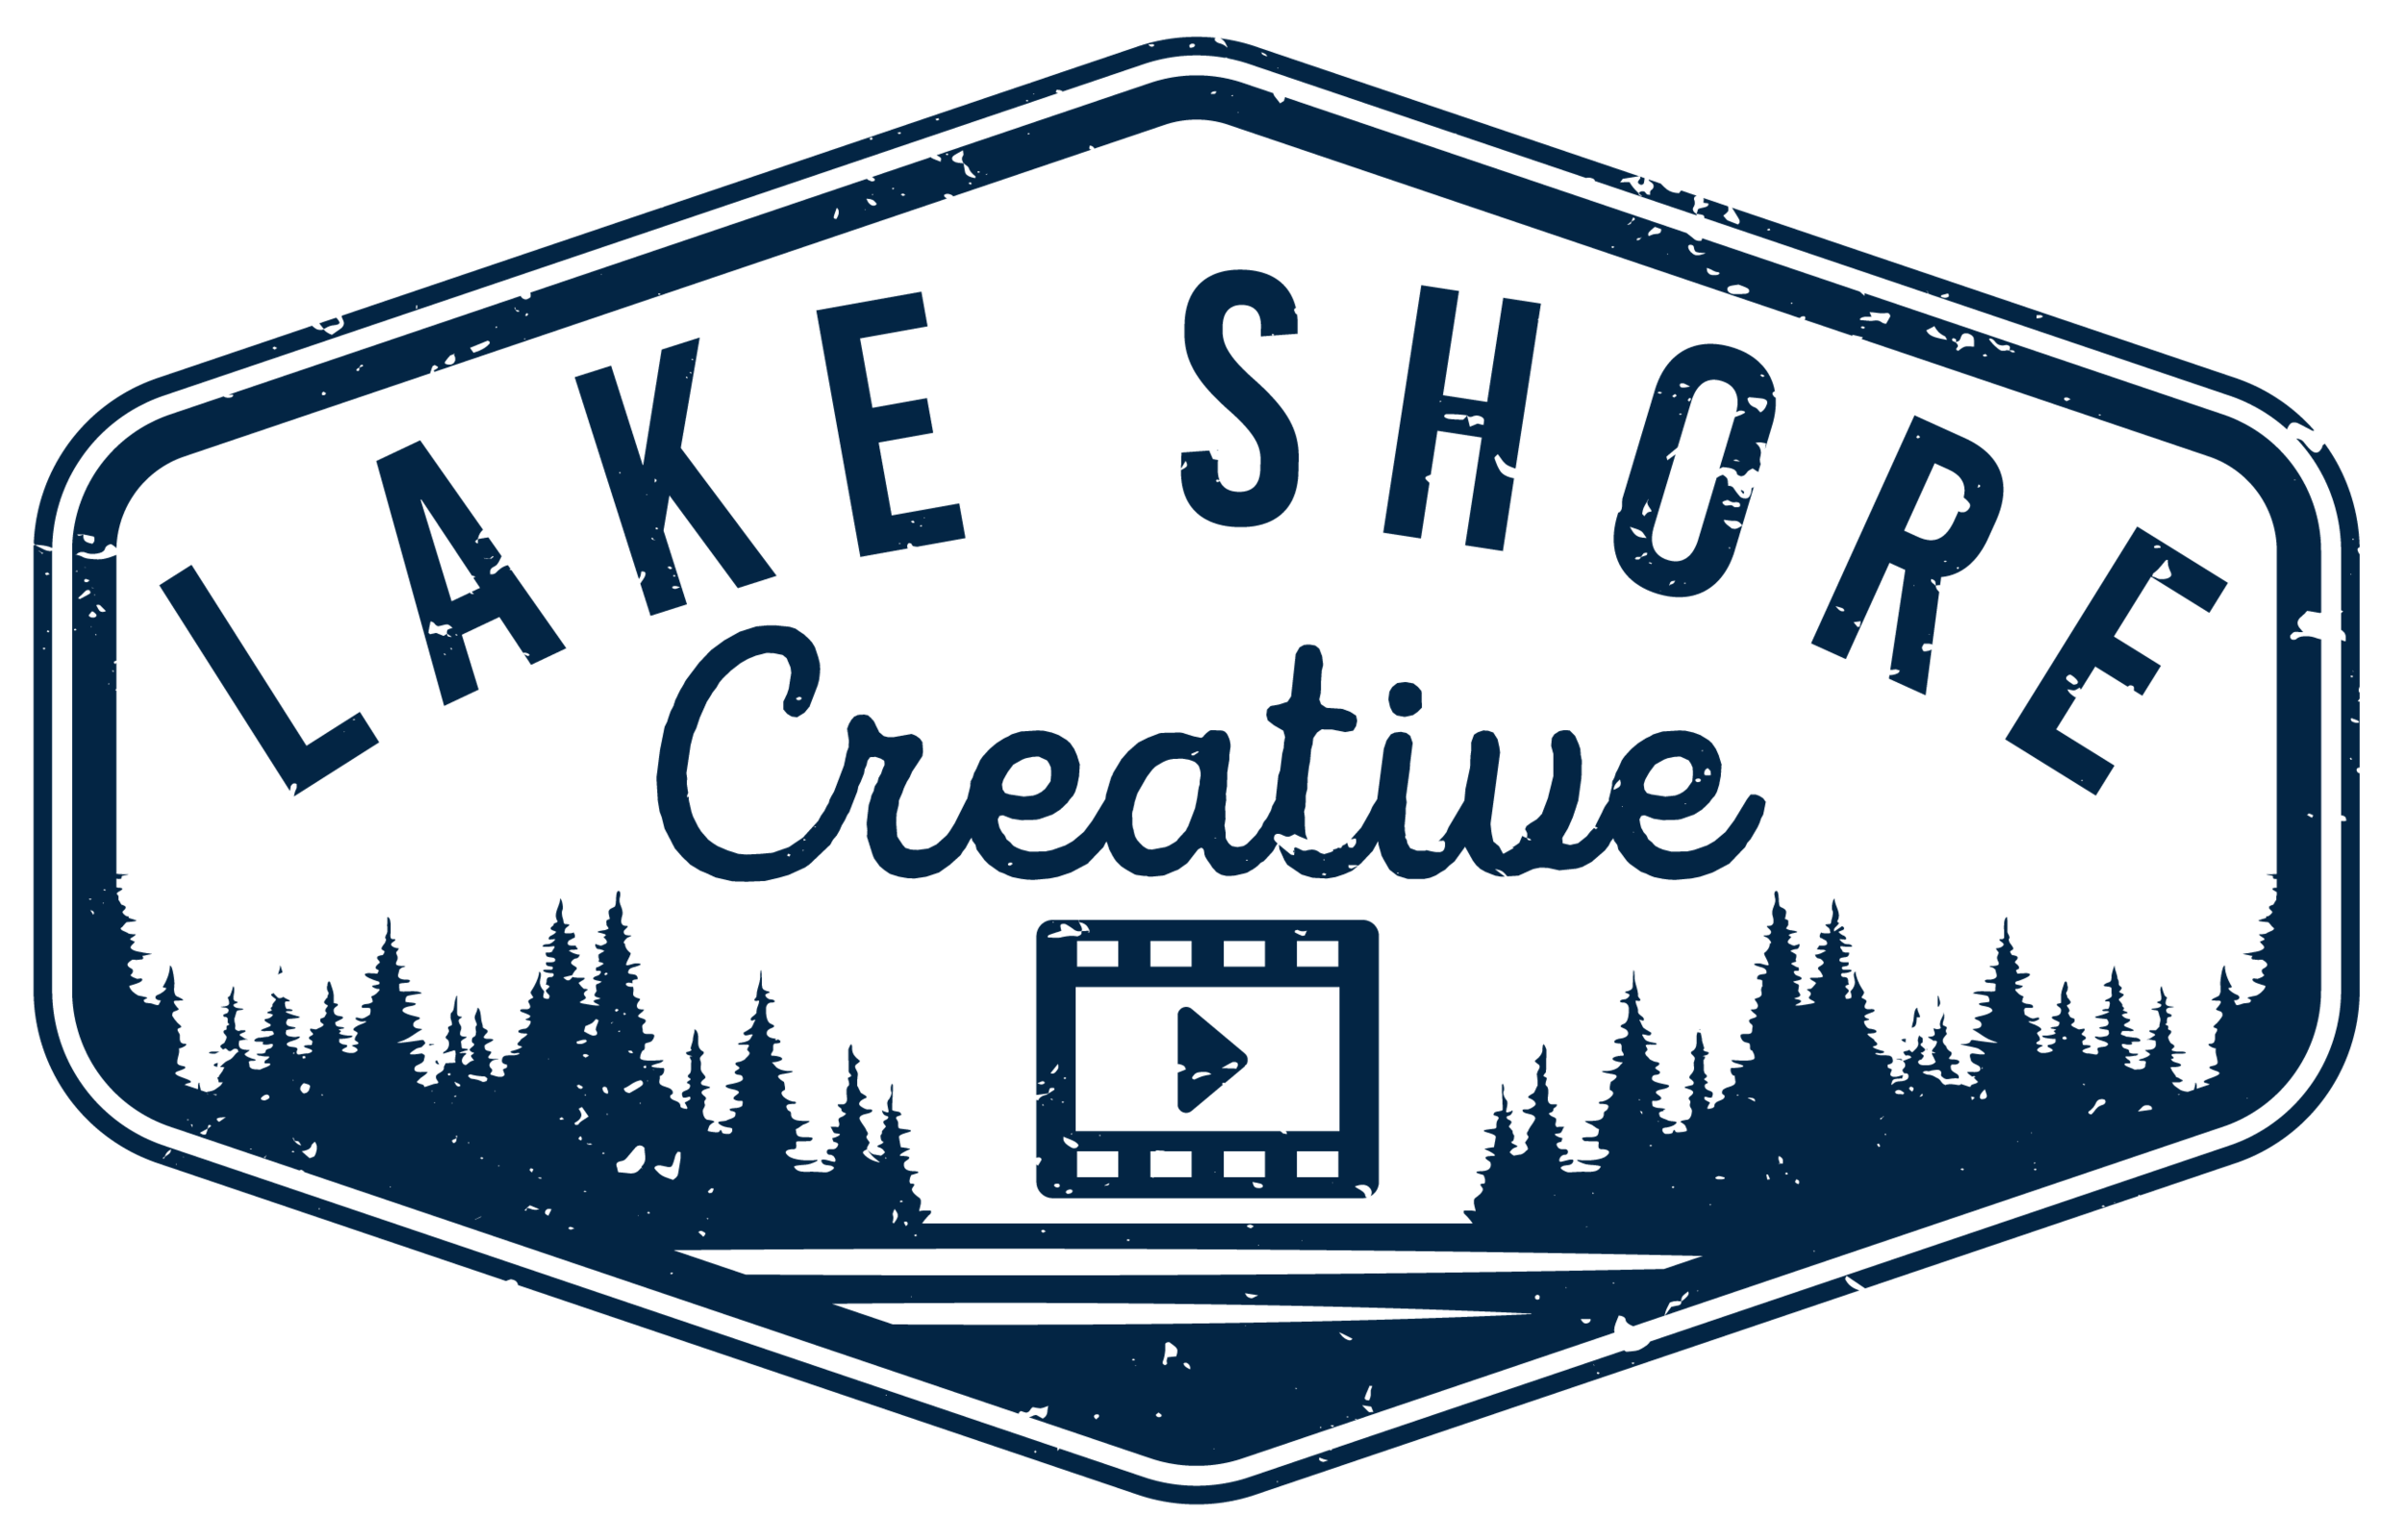 Lake Shore Creative